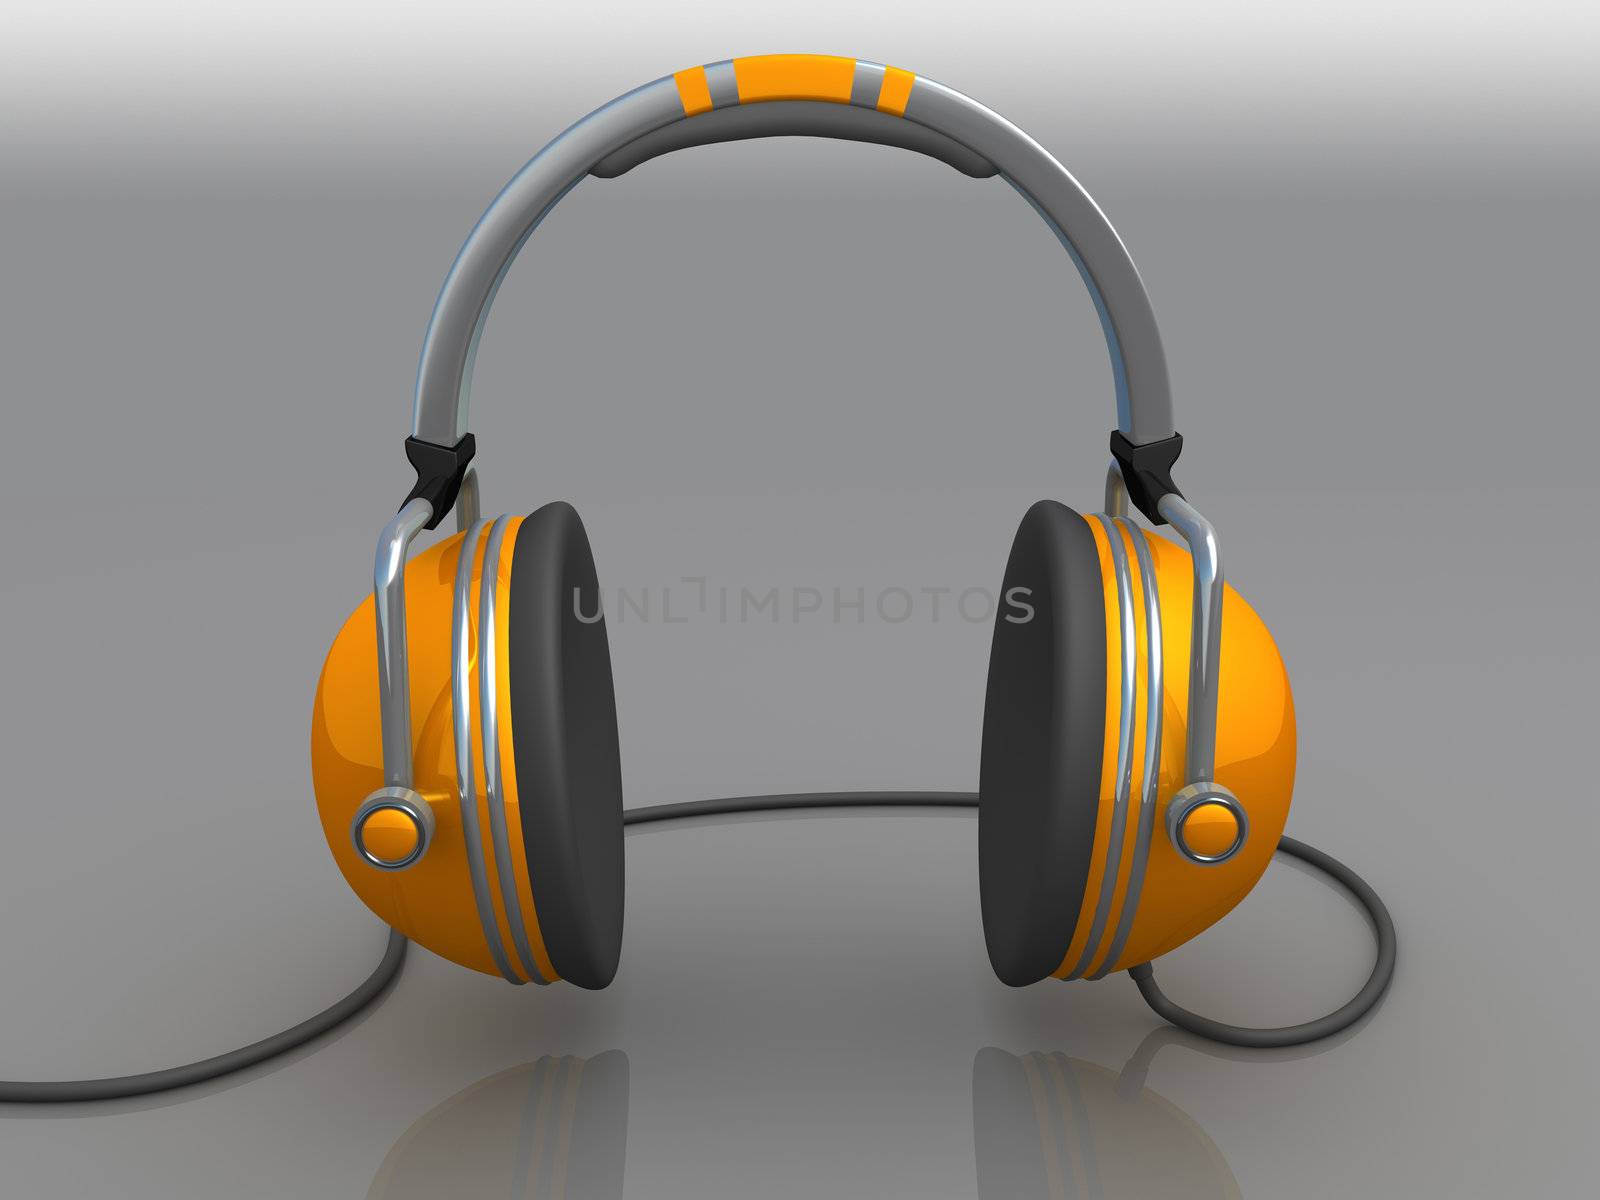 Headphones by 3pod